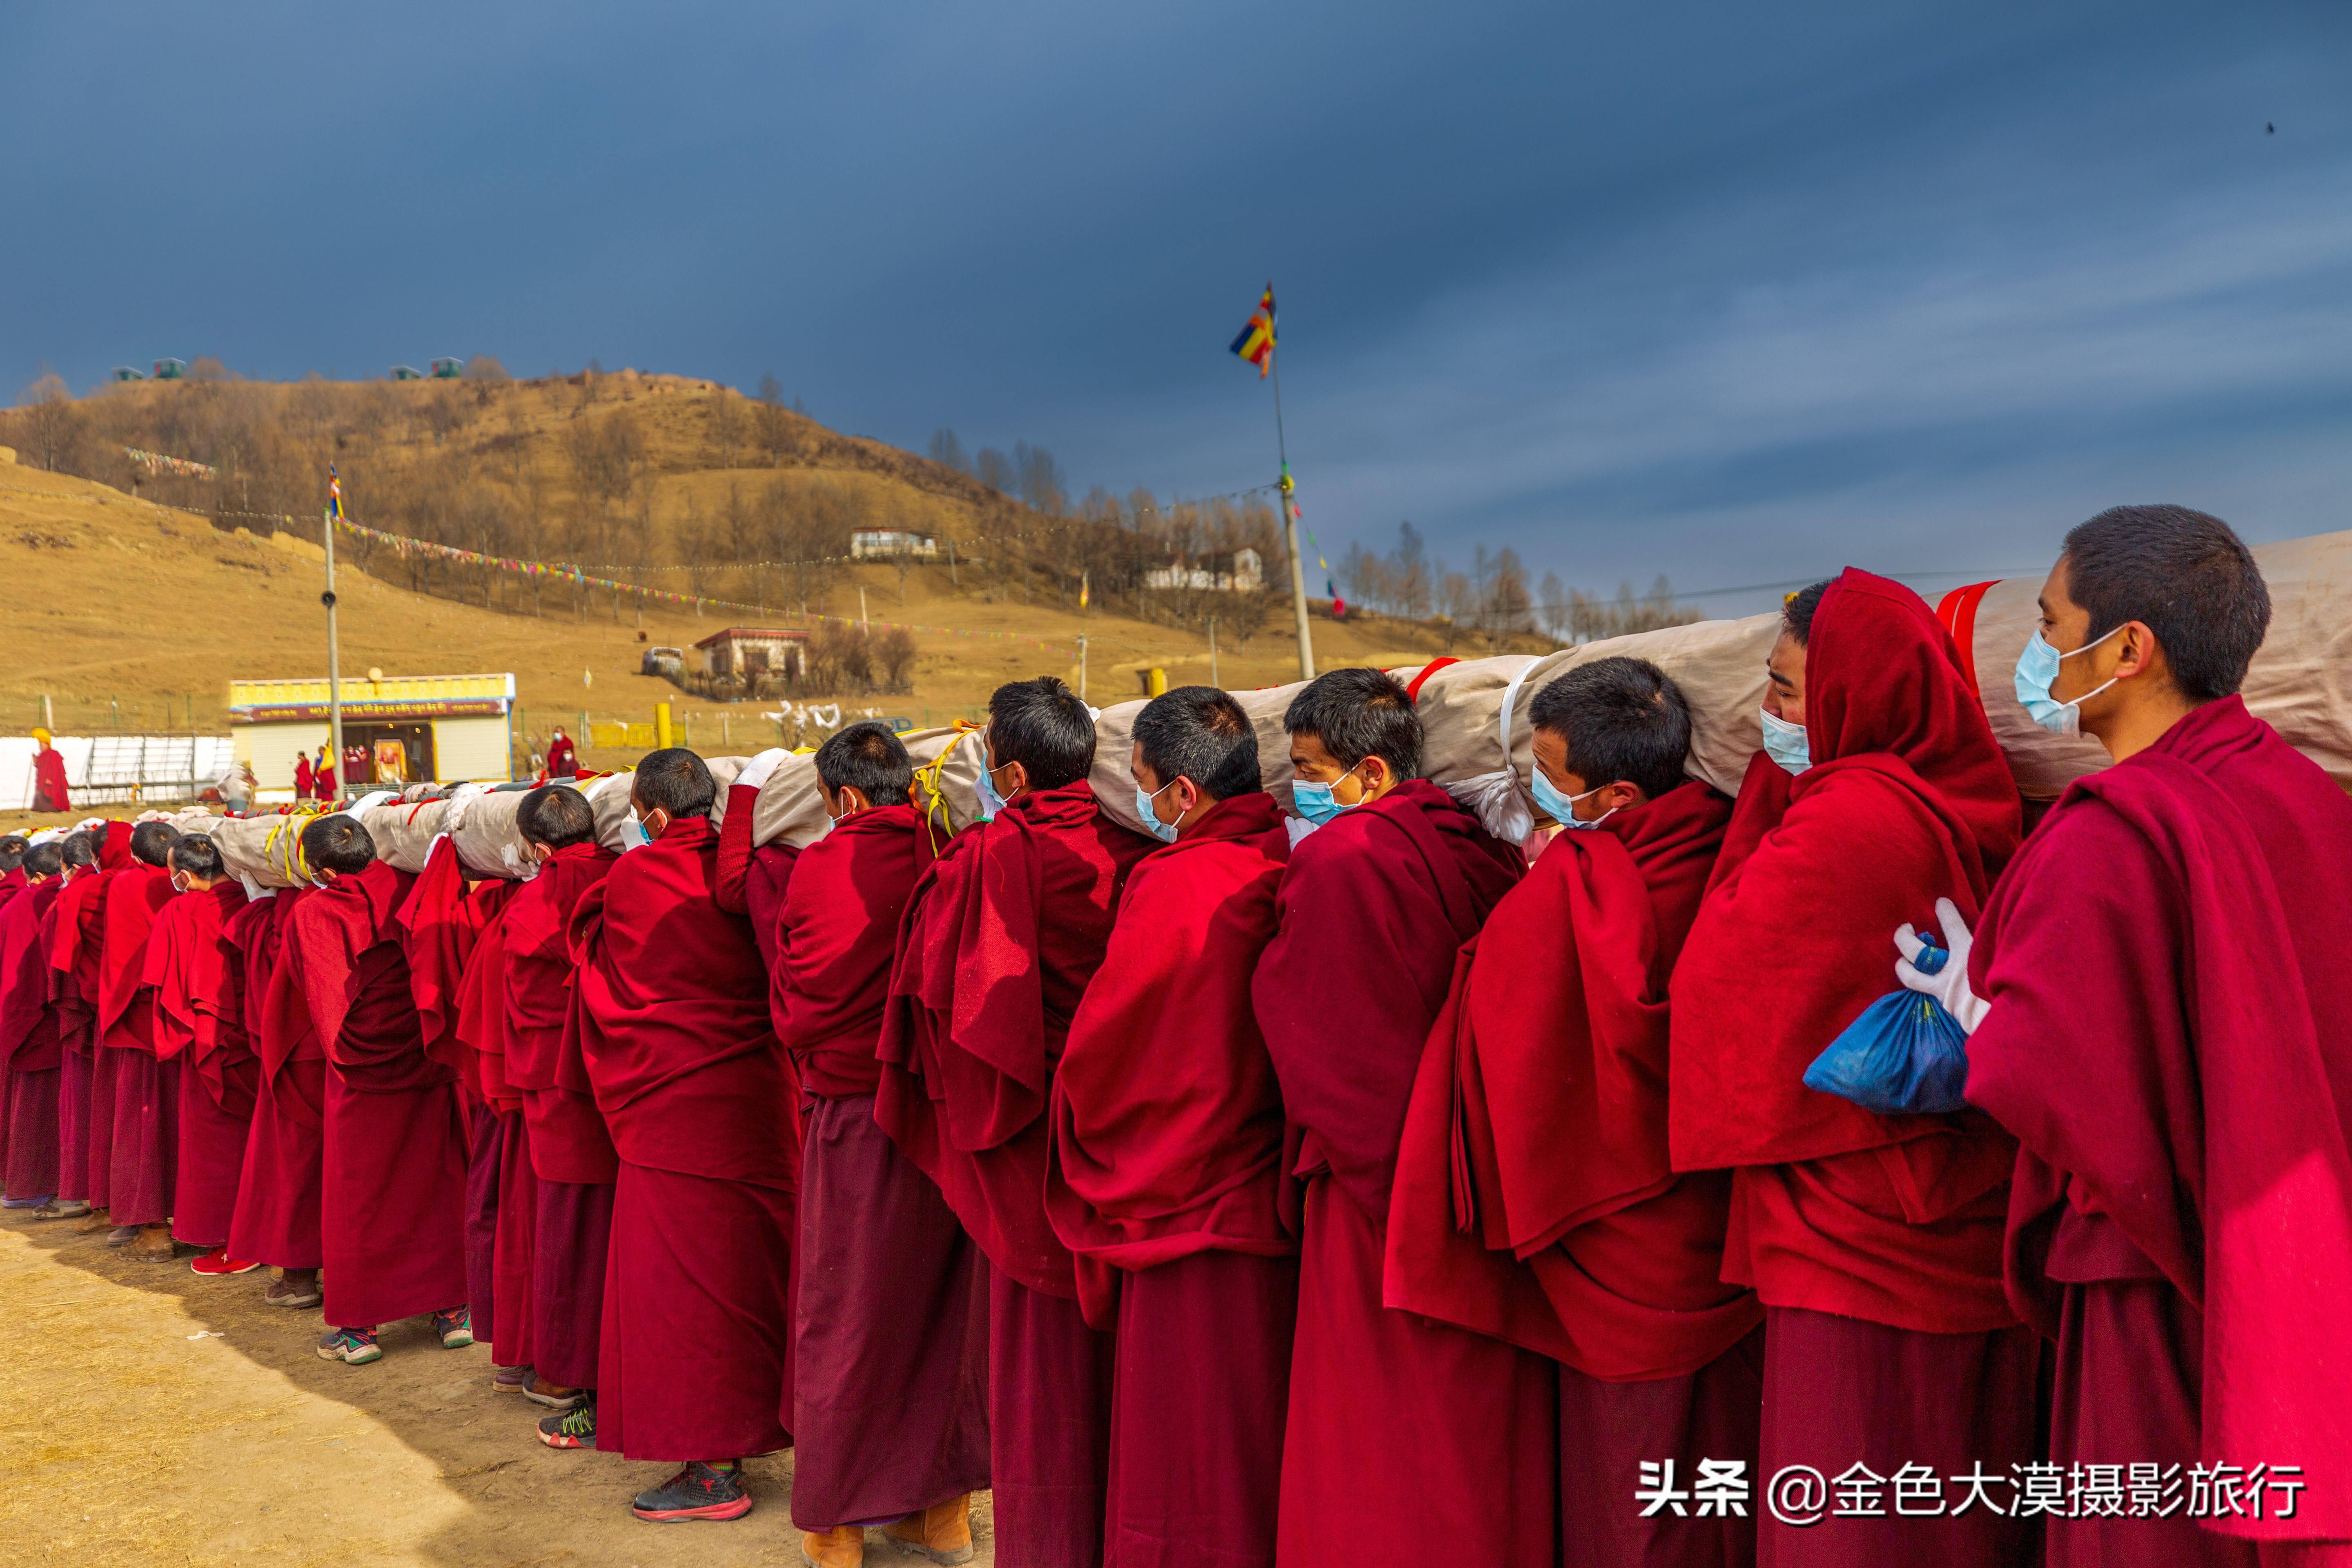 阿坝旅游摄影2022年莫郎节盛大的民俗宗教文化活动格尔登寺纪实